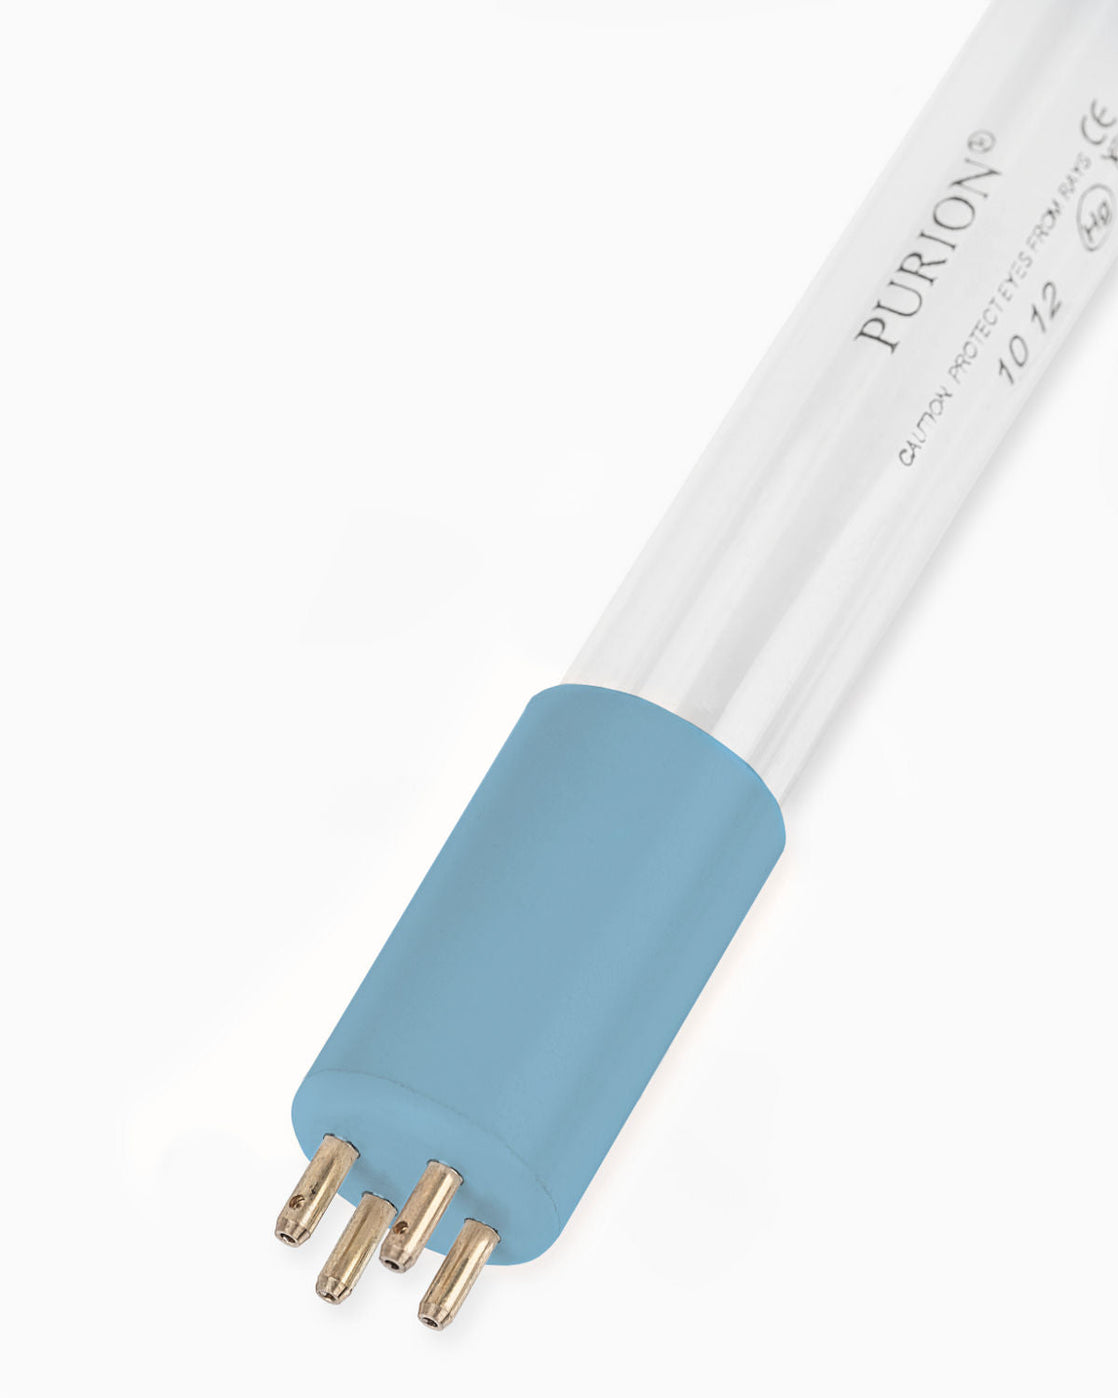 Eine blaue PURION 400 110 - 240 V AC OTC UV-C-Lampe auf weißem Hintergrund sorgt für entkeimtes Trinkwasser.